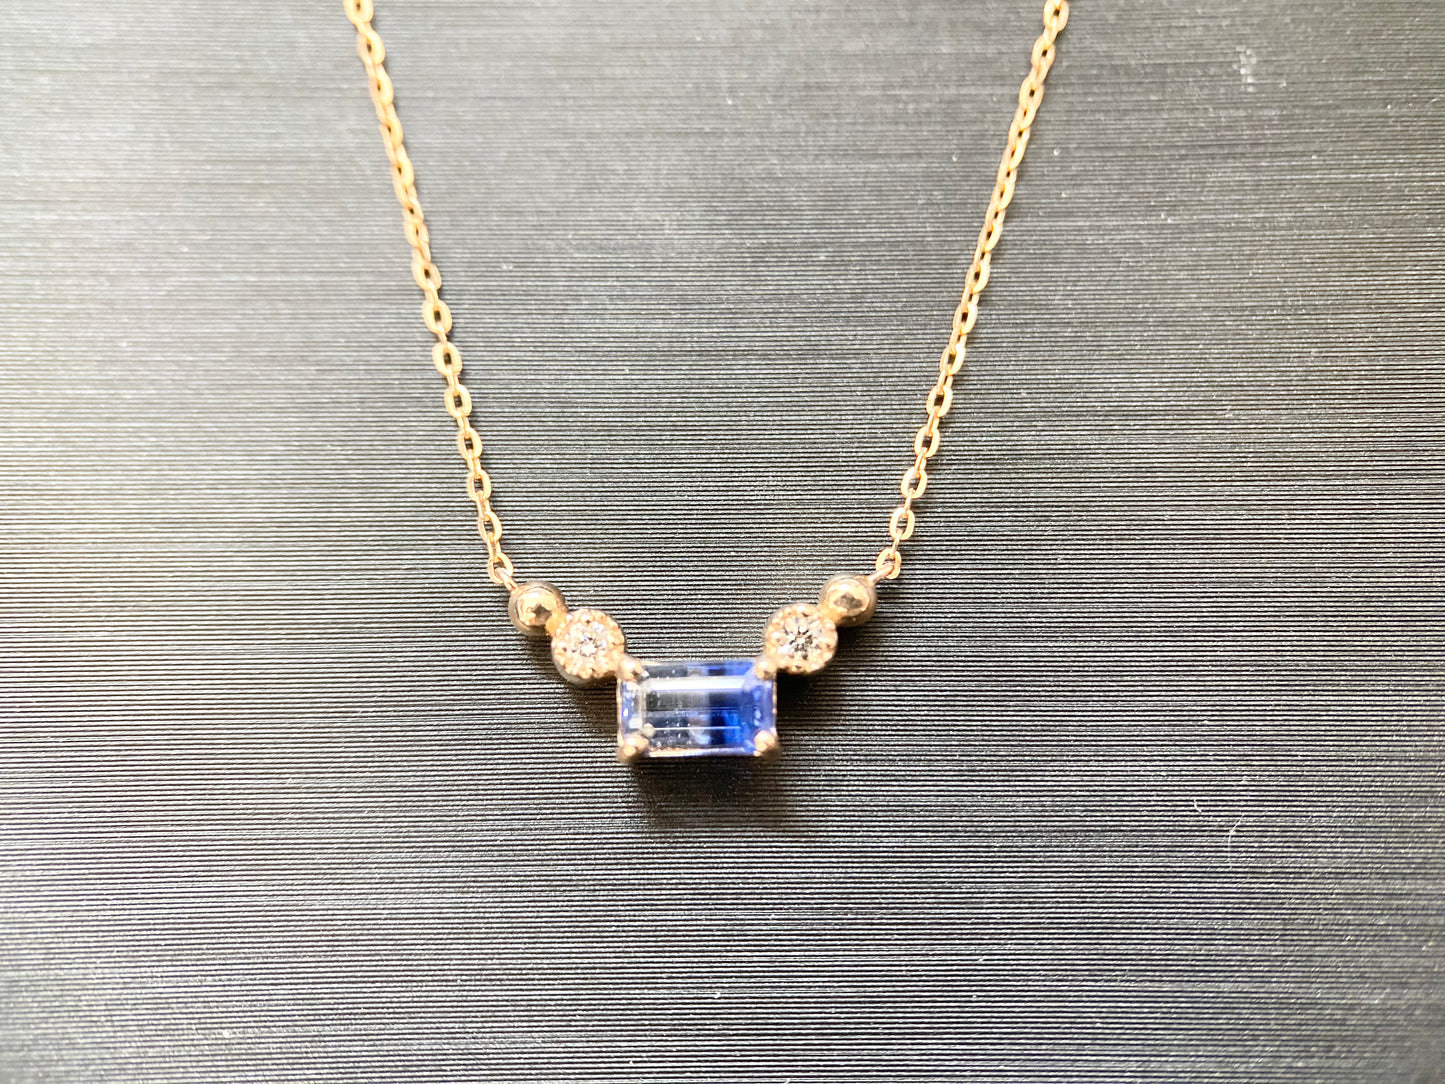 New] [Rare Stone] Bicolor Sapphire Necklace Jewelry